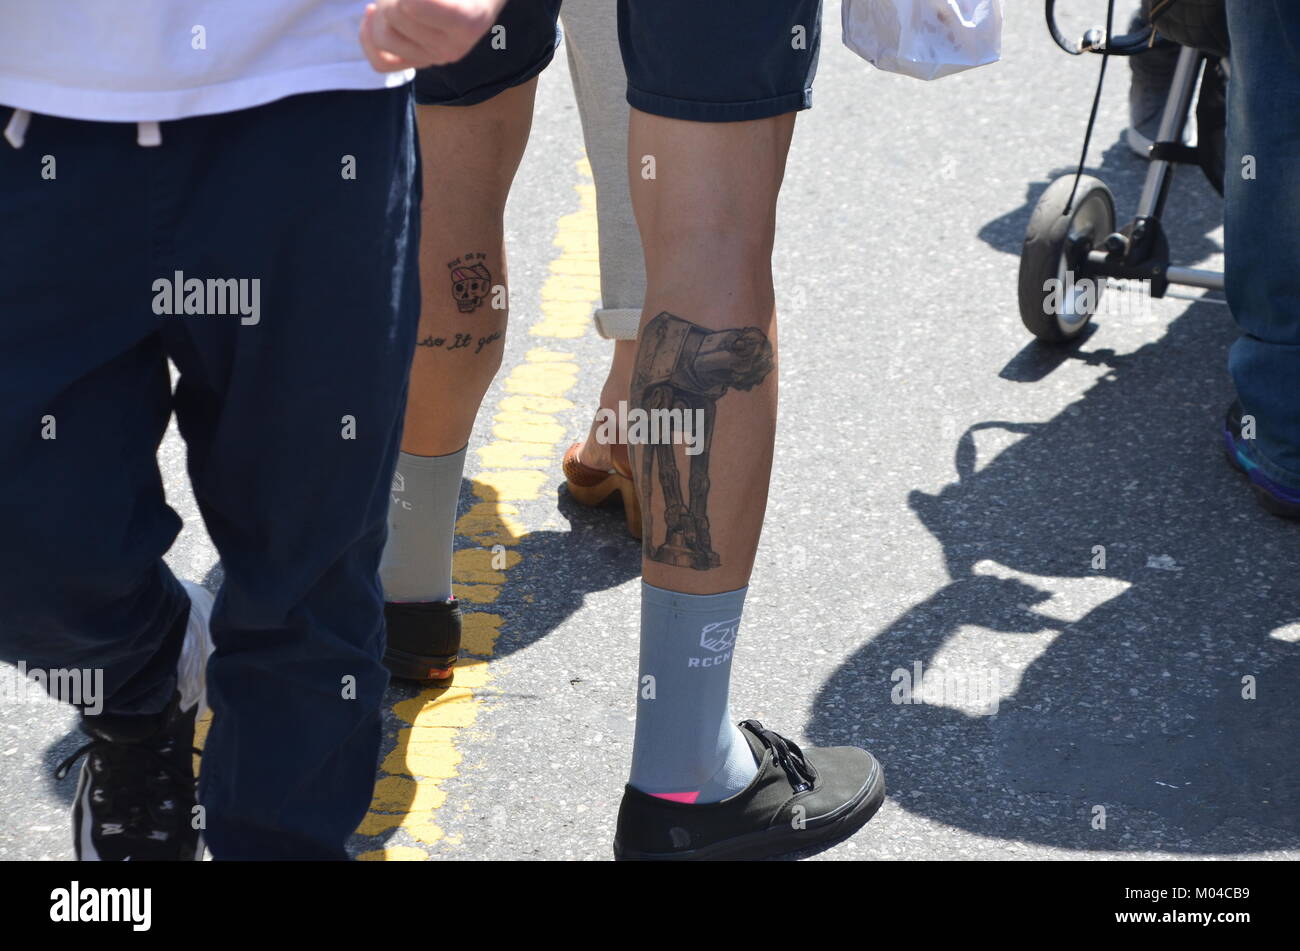 Una star wars A-al tatuaggio su un uomo è la gamba brooklyn new york STATI UNITI D'AMERICA Foto Stock